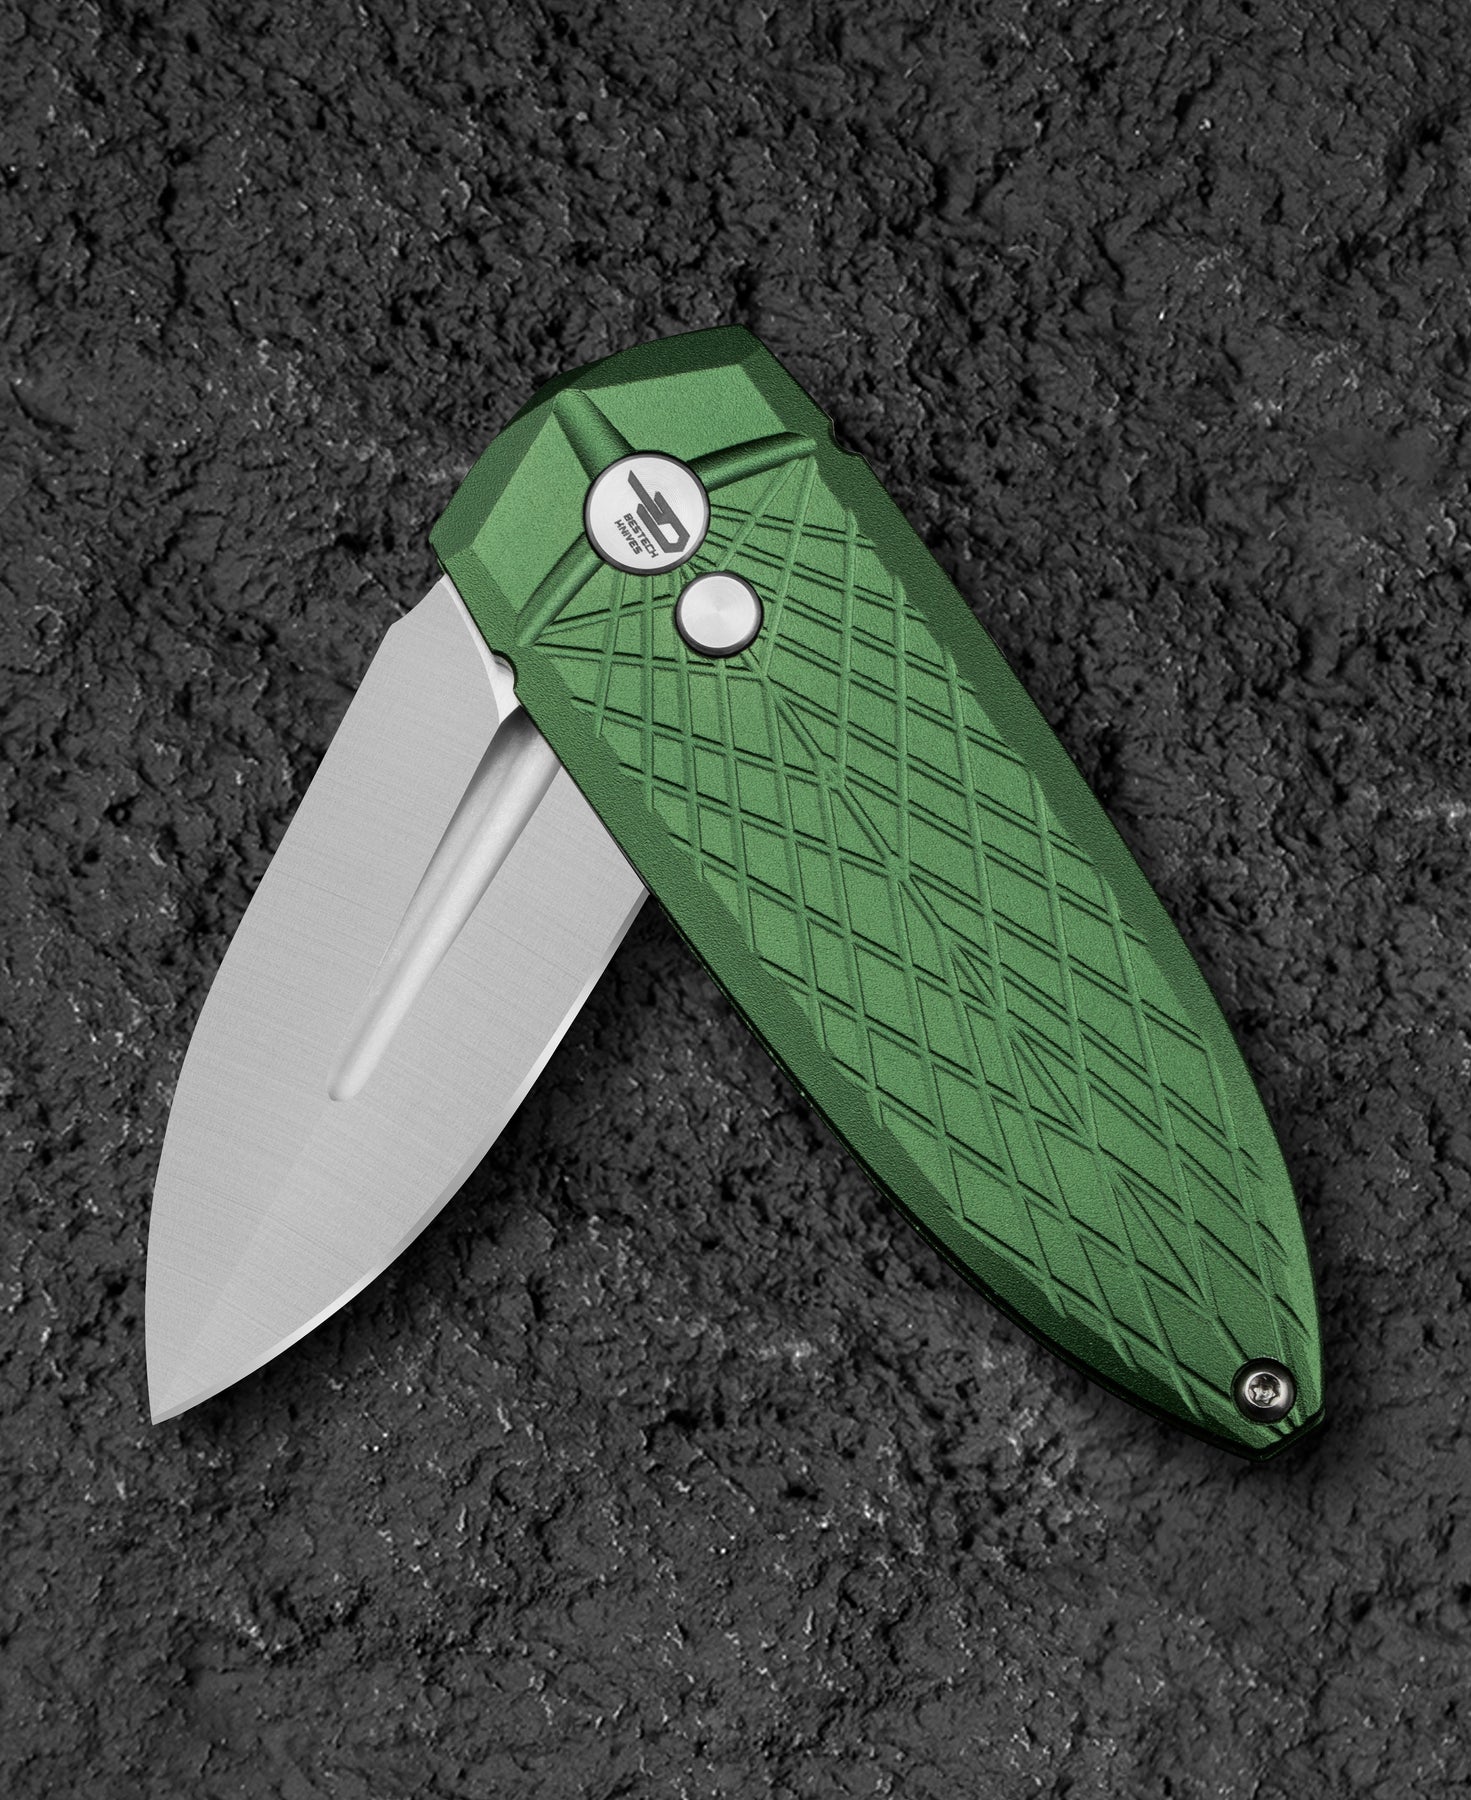 Bestech Knives QUQU 14C28N钢 铝合金柄 BG57B-2 468